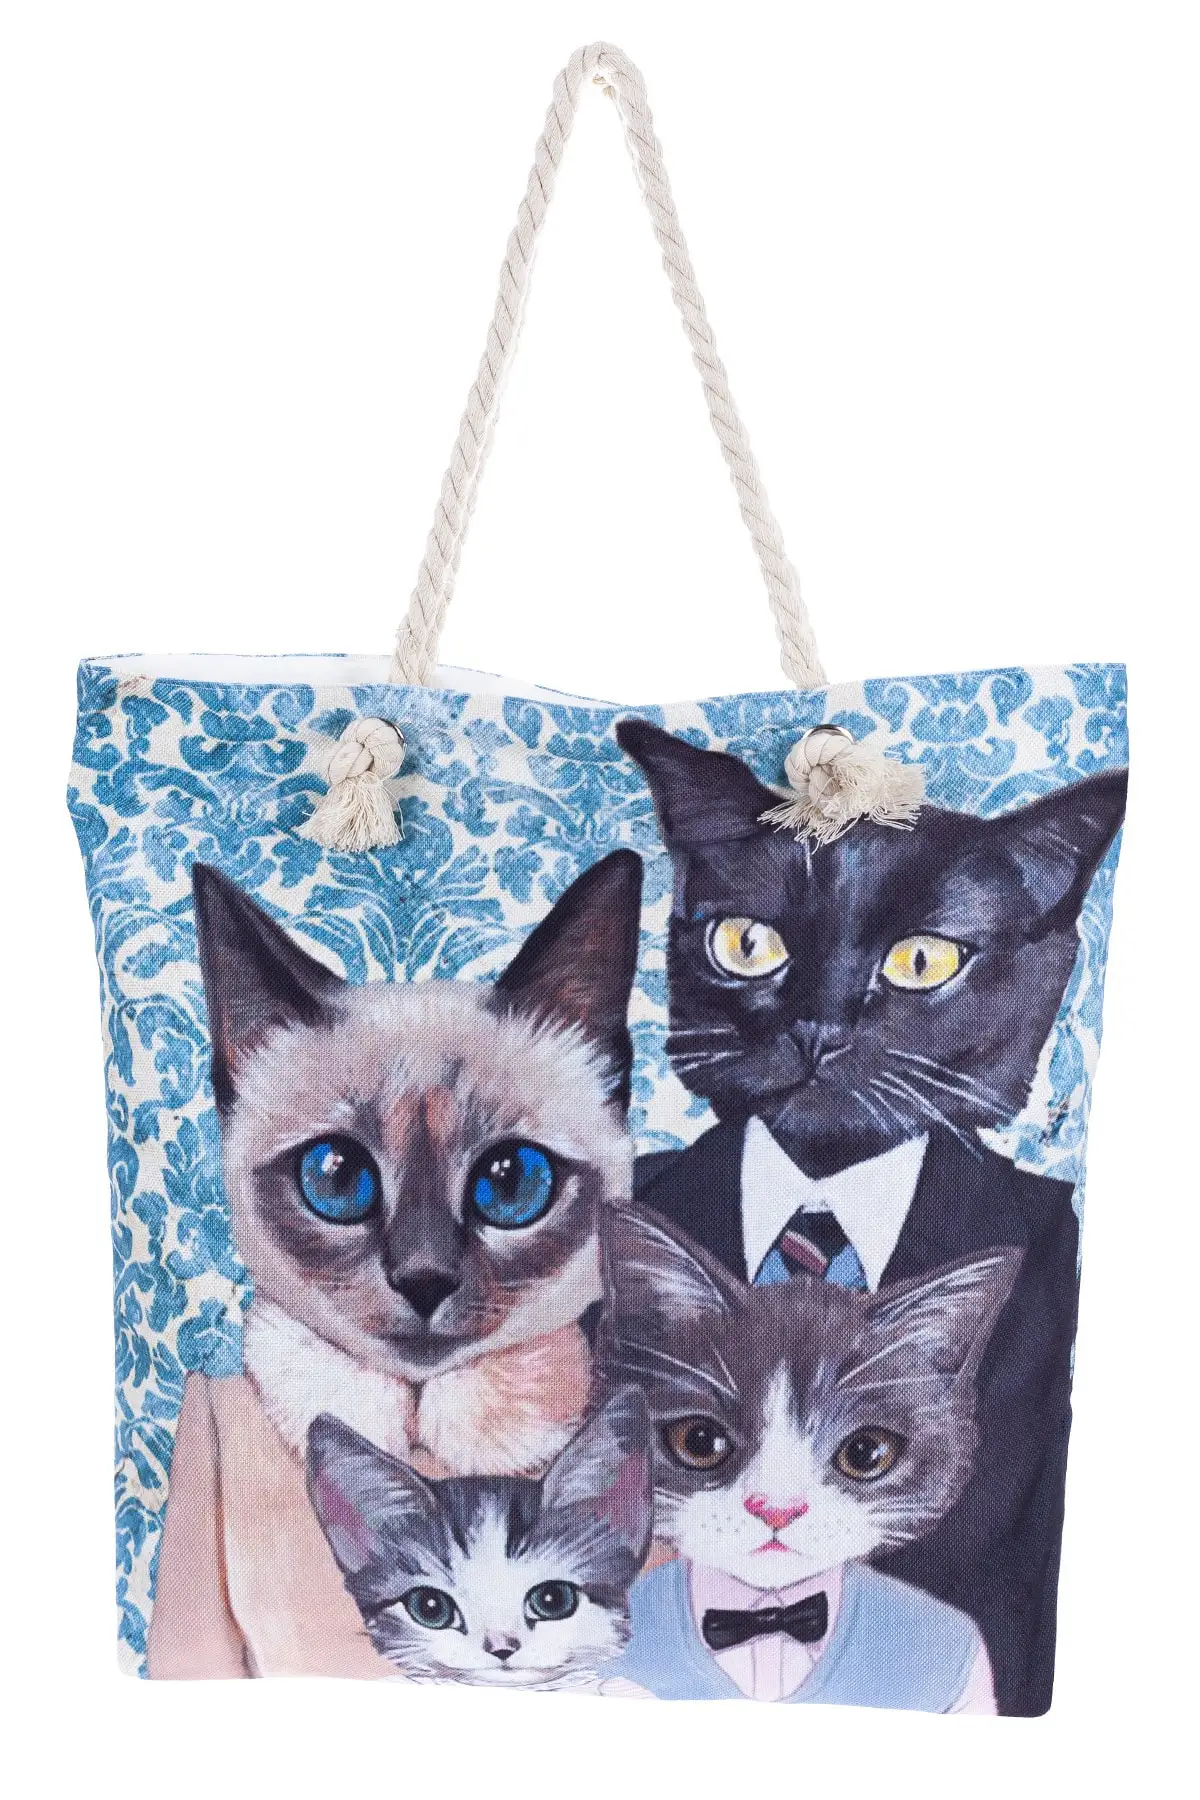 

Женская пляжная сумка-тоут с принтом кошки, модная летняя вместительная сумка через плечо с рисунком